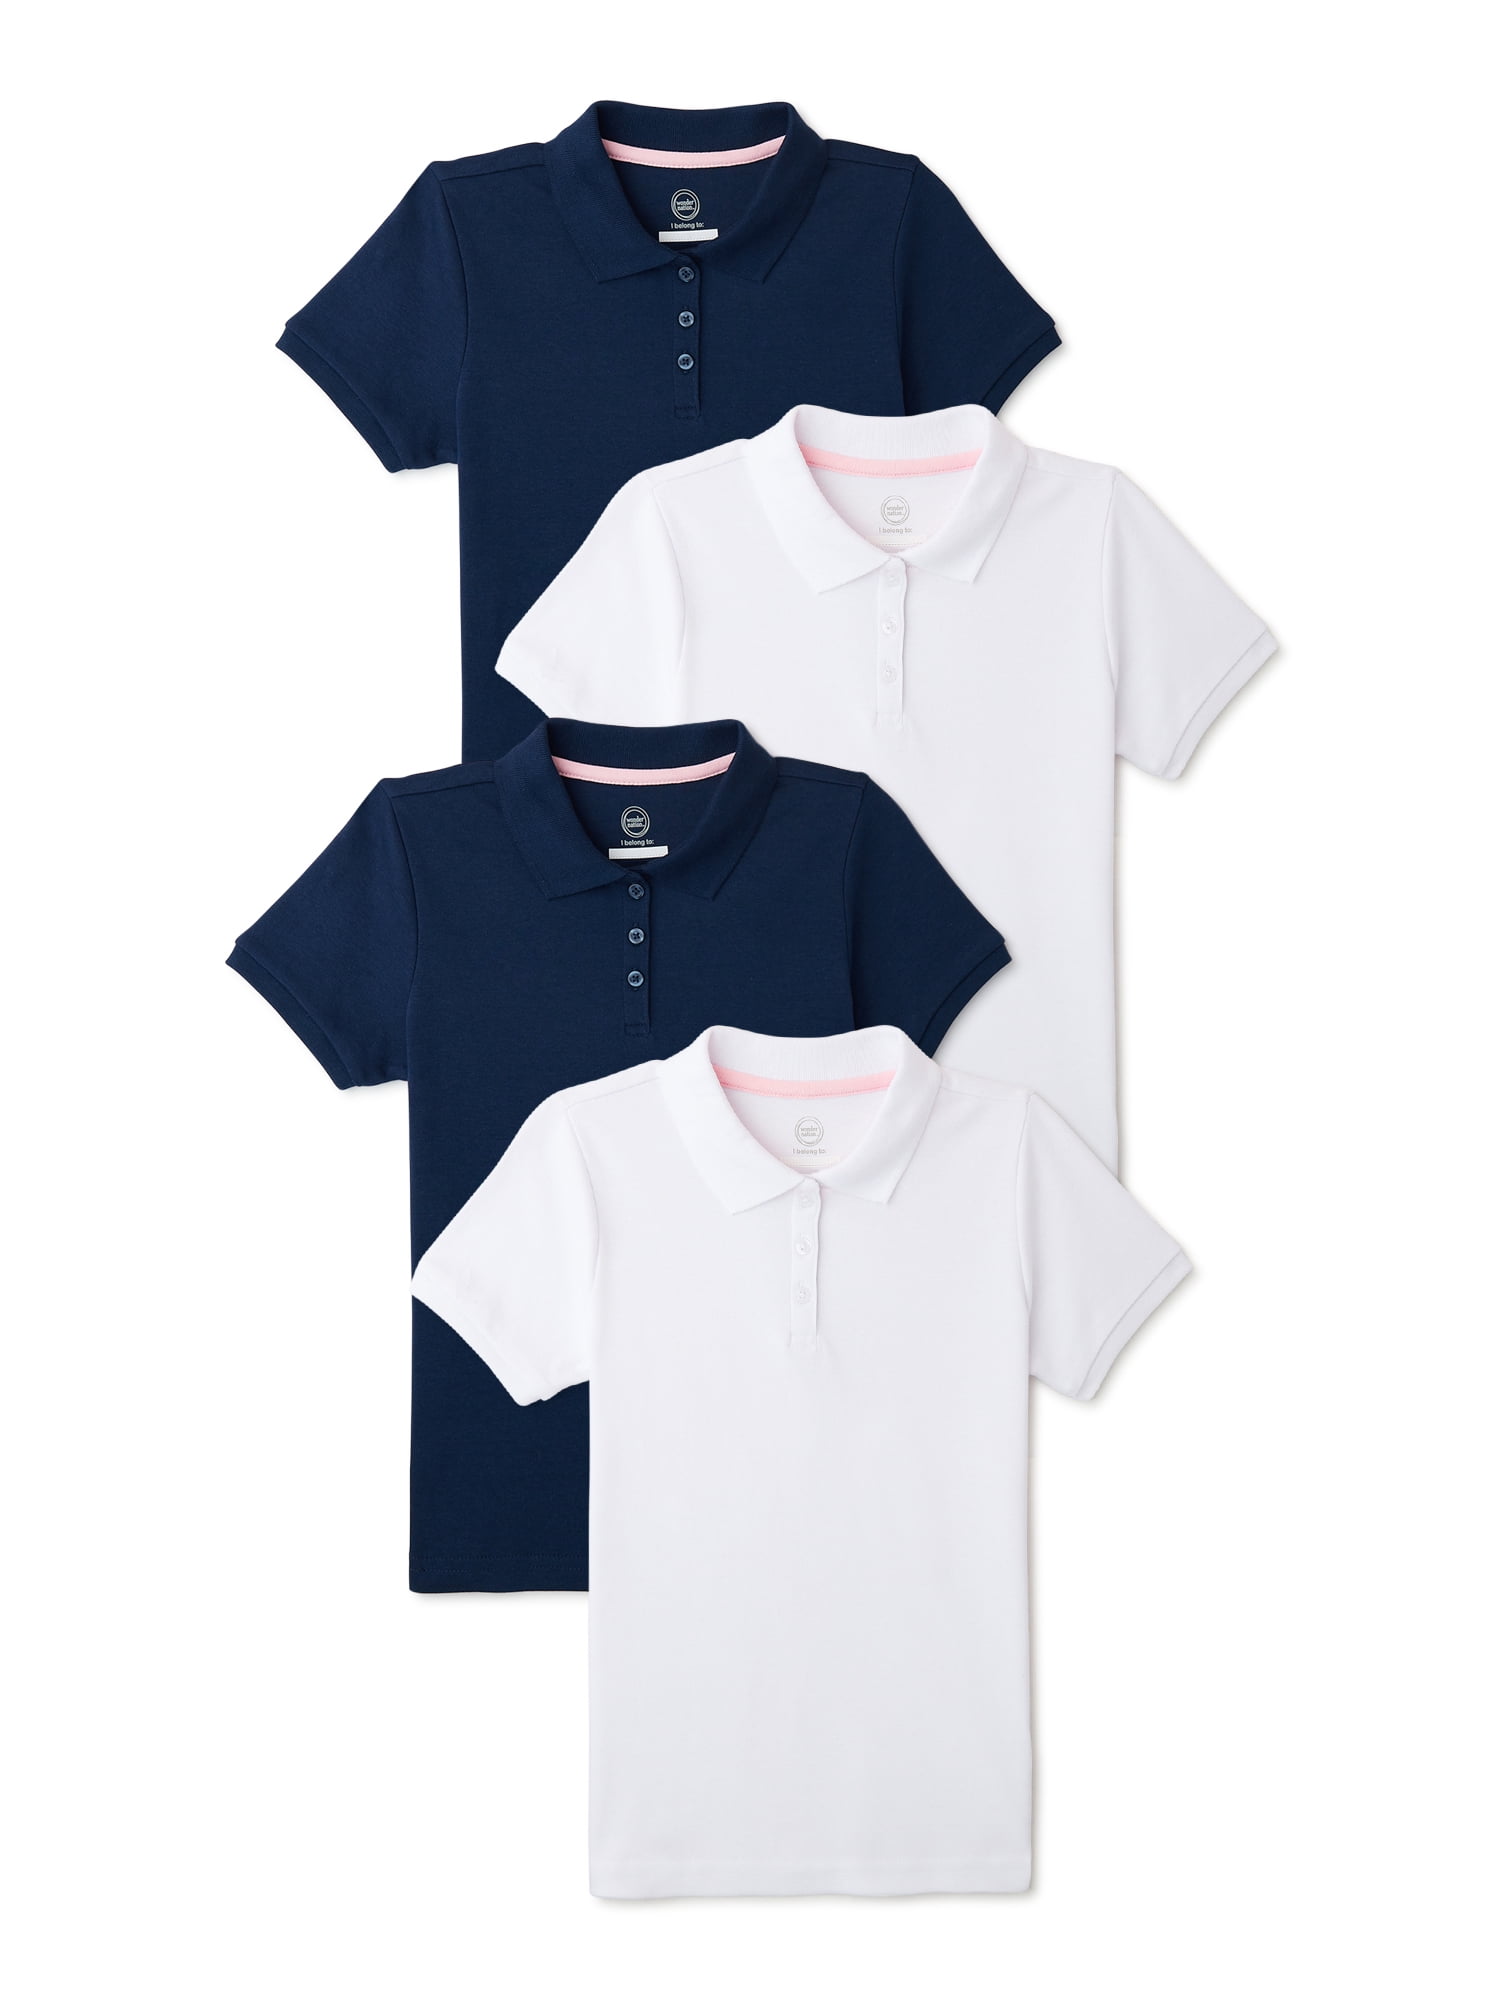 Polo Assn Girls School Uniform Shirt 2 Pack Short Sleeve Polo T-Shirt Little Girl/Big Girl U.S 